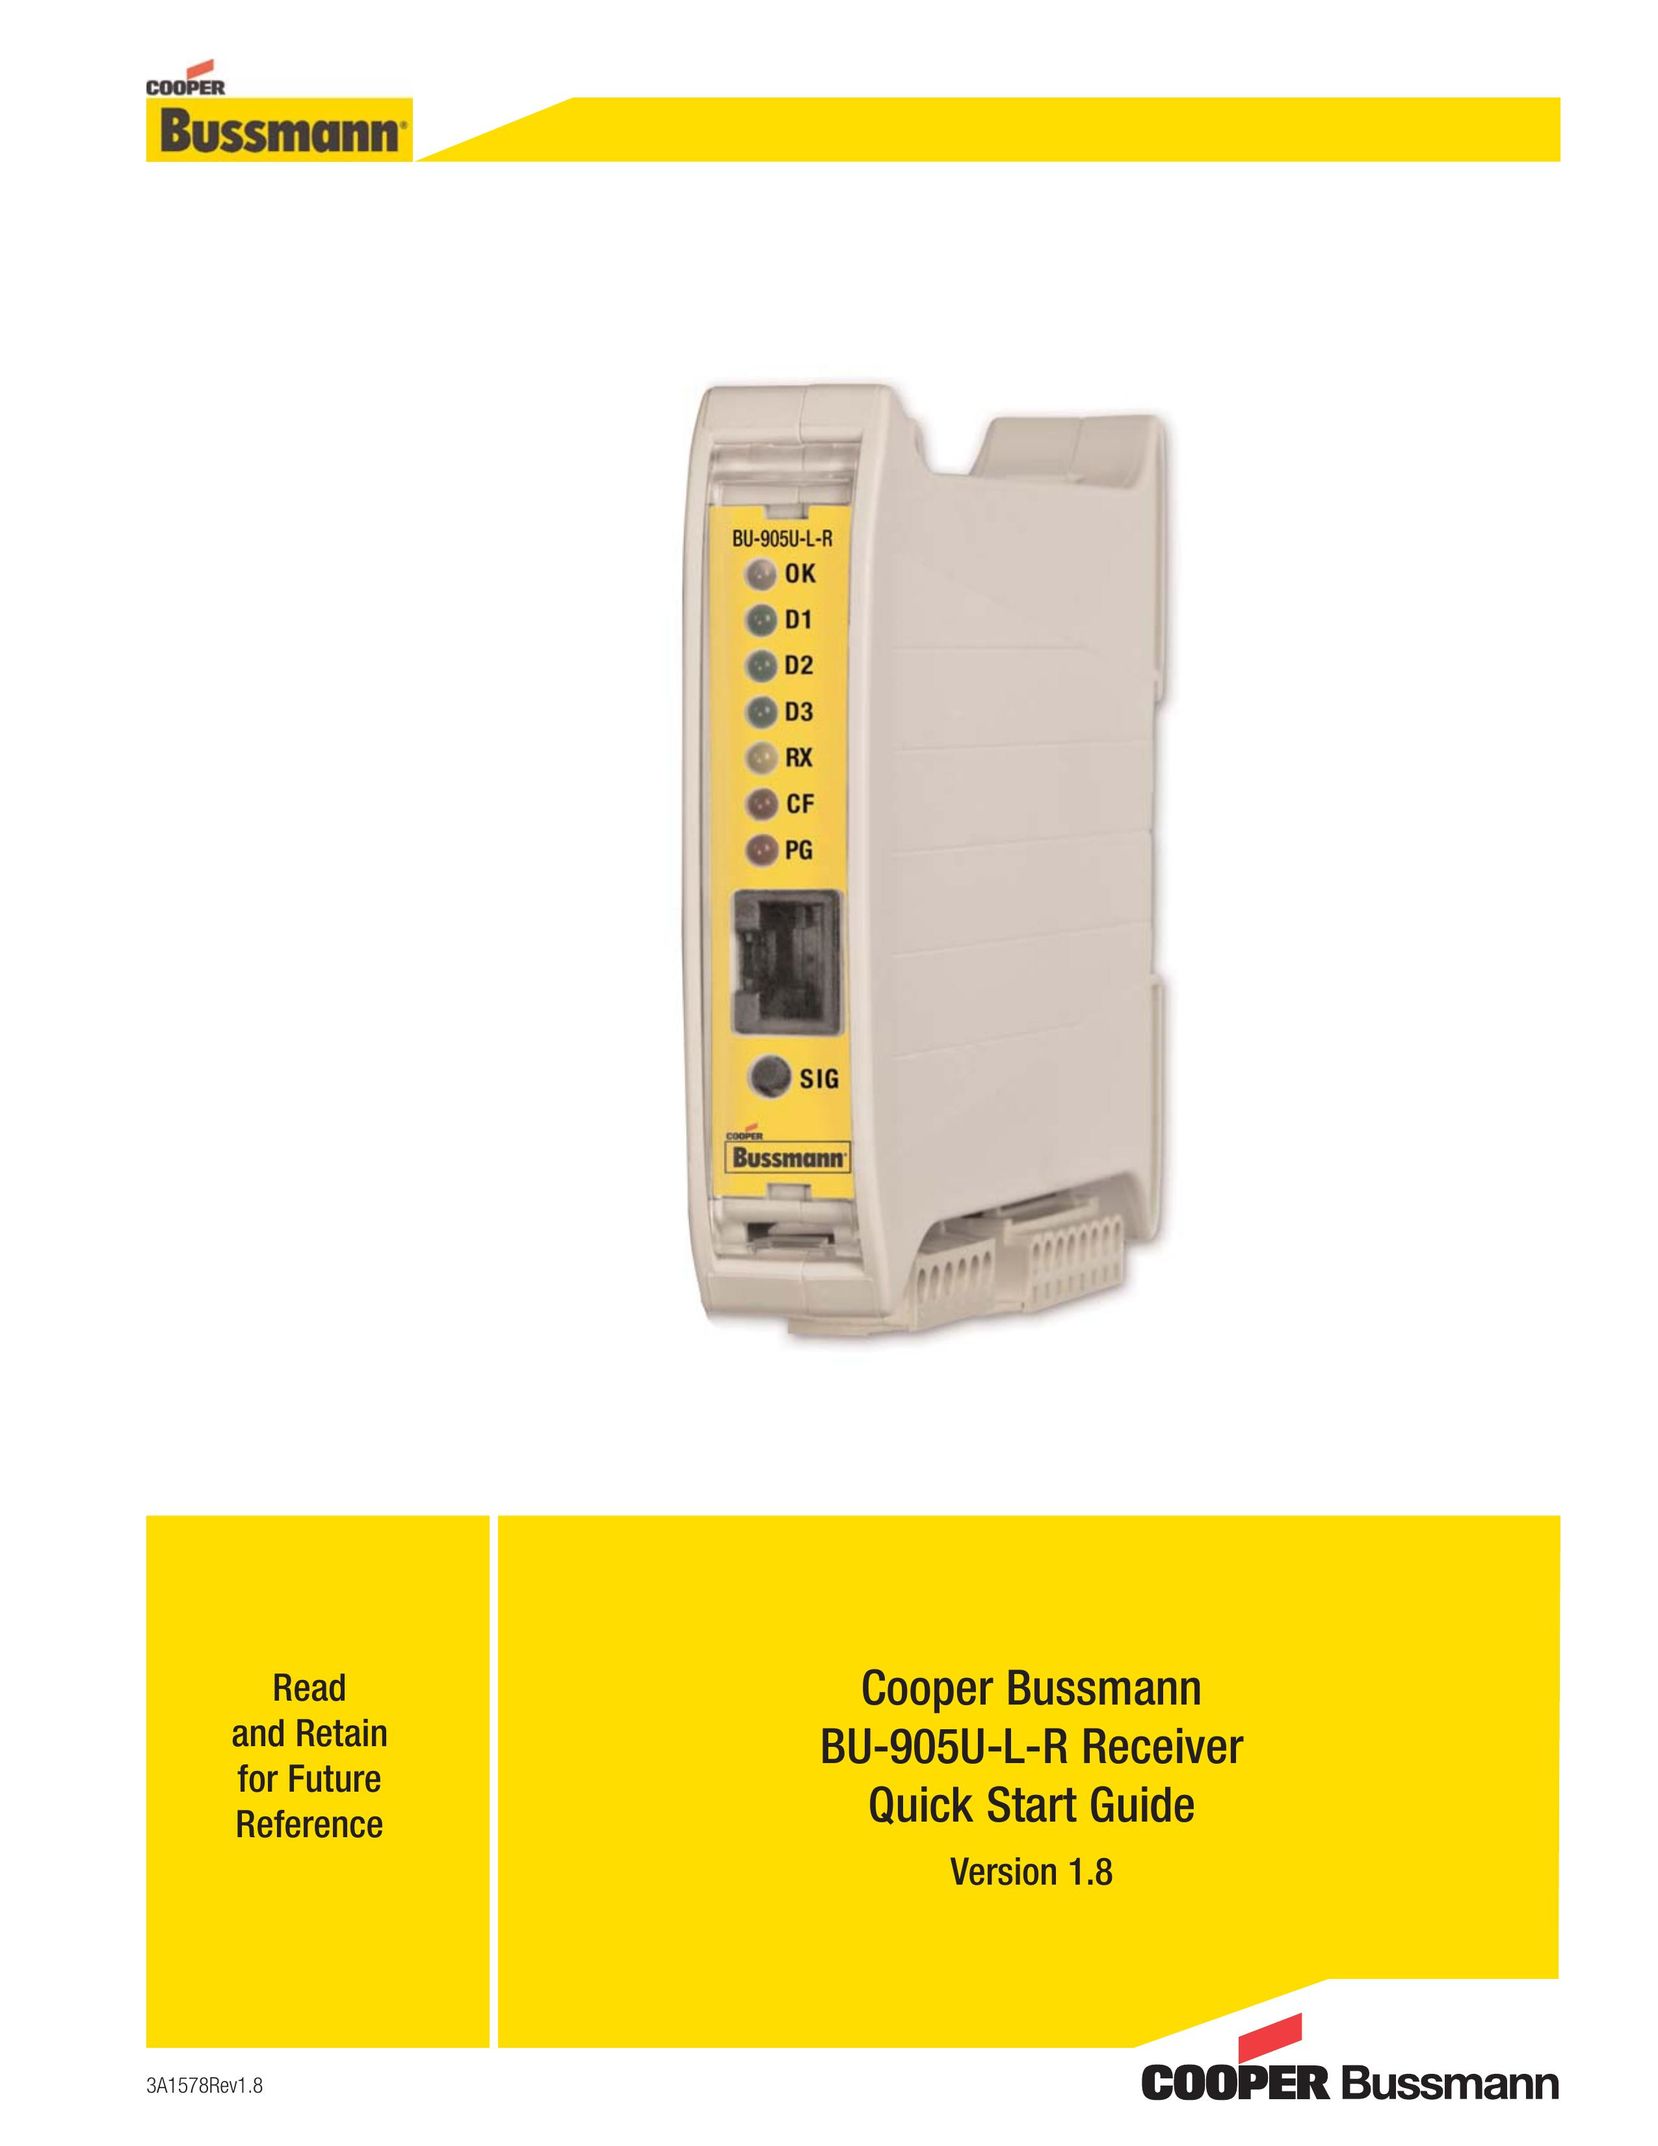 Cooper Bussmann BU-905U-L-R TV Receiver User Manual